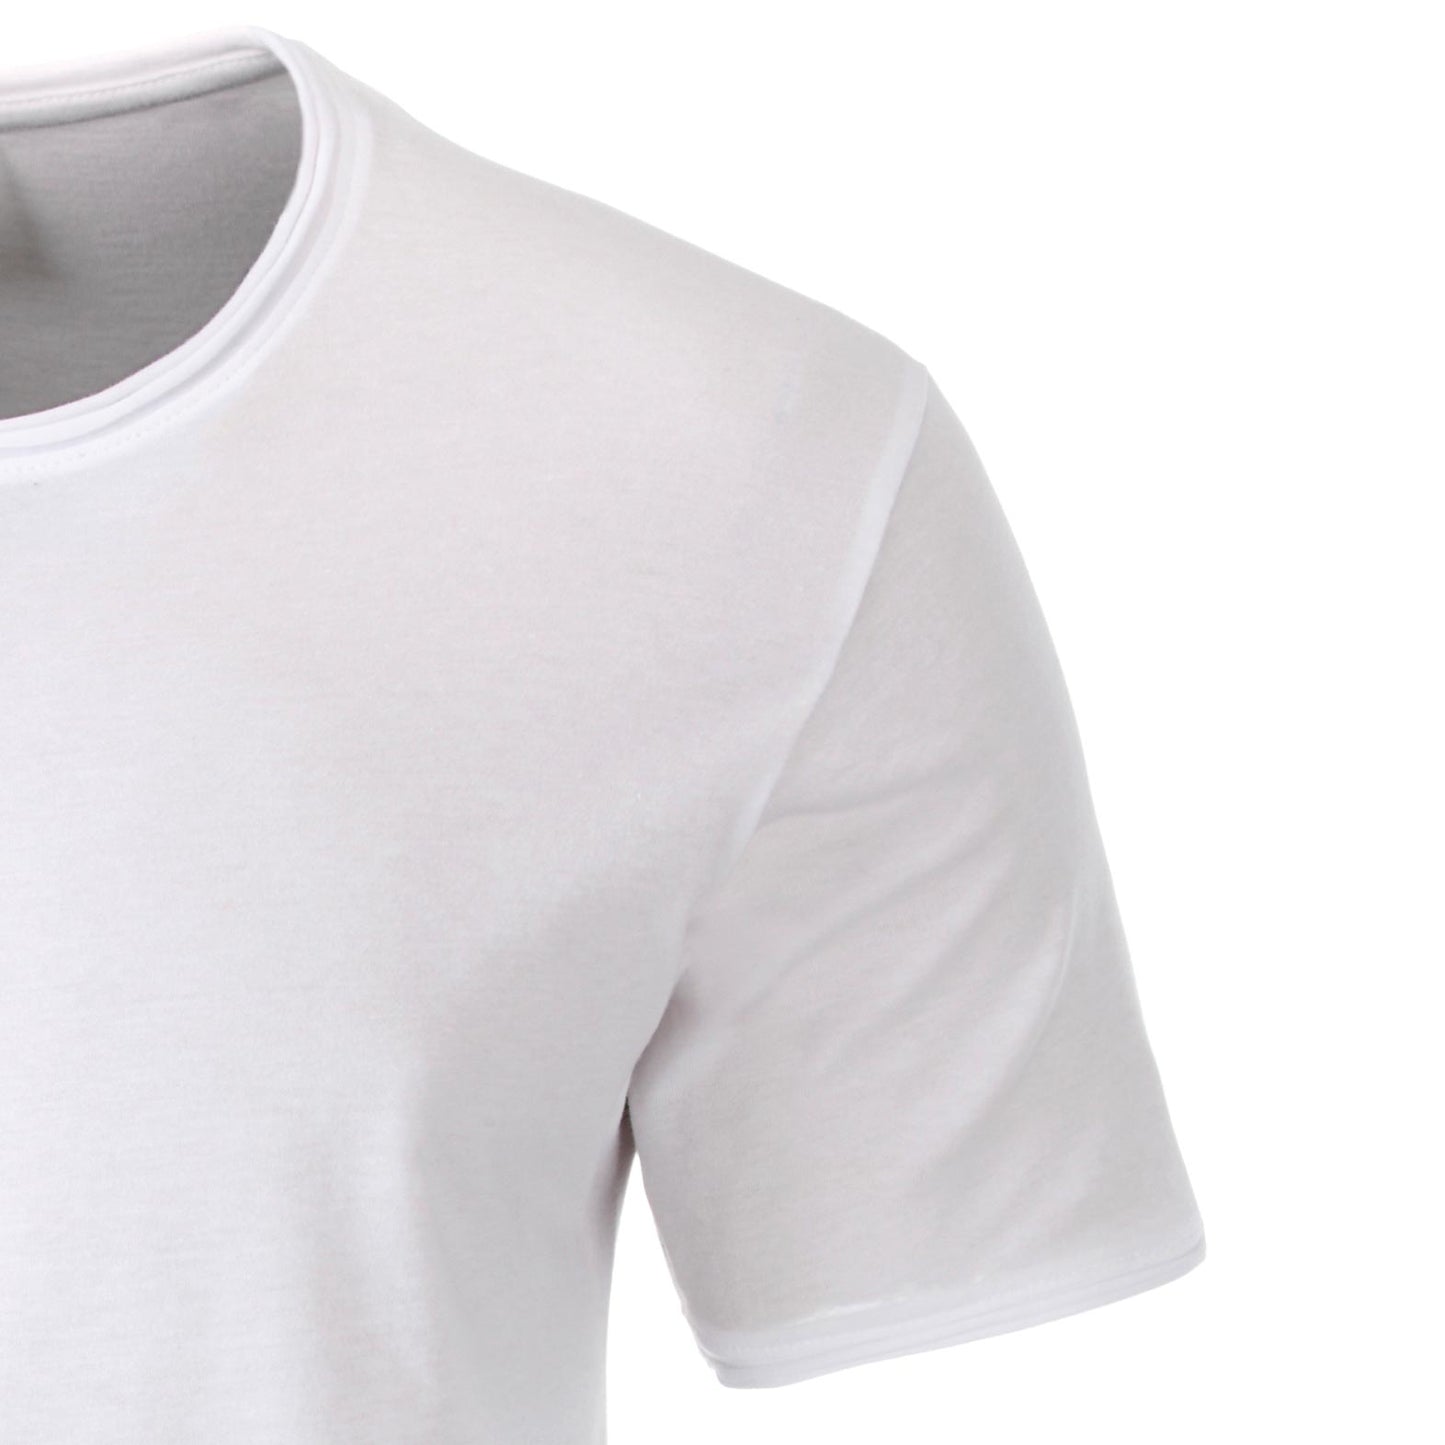 JAN 8002 ― Herren Bio-Baumwolle Rollsaum T-Shirt - Weiß